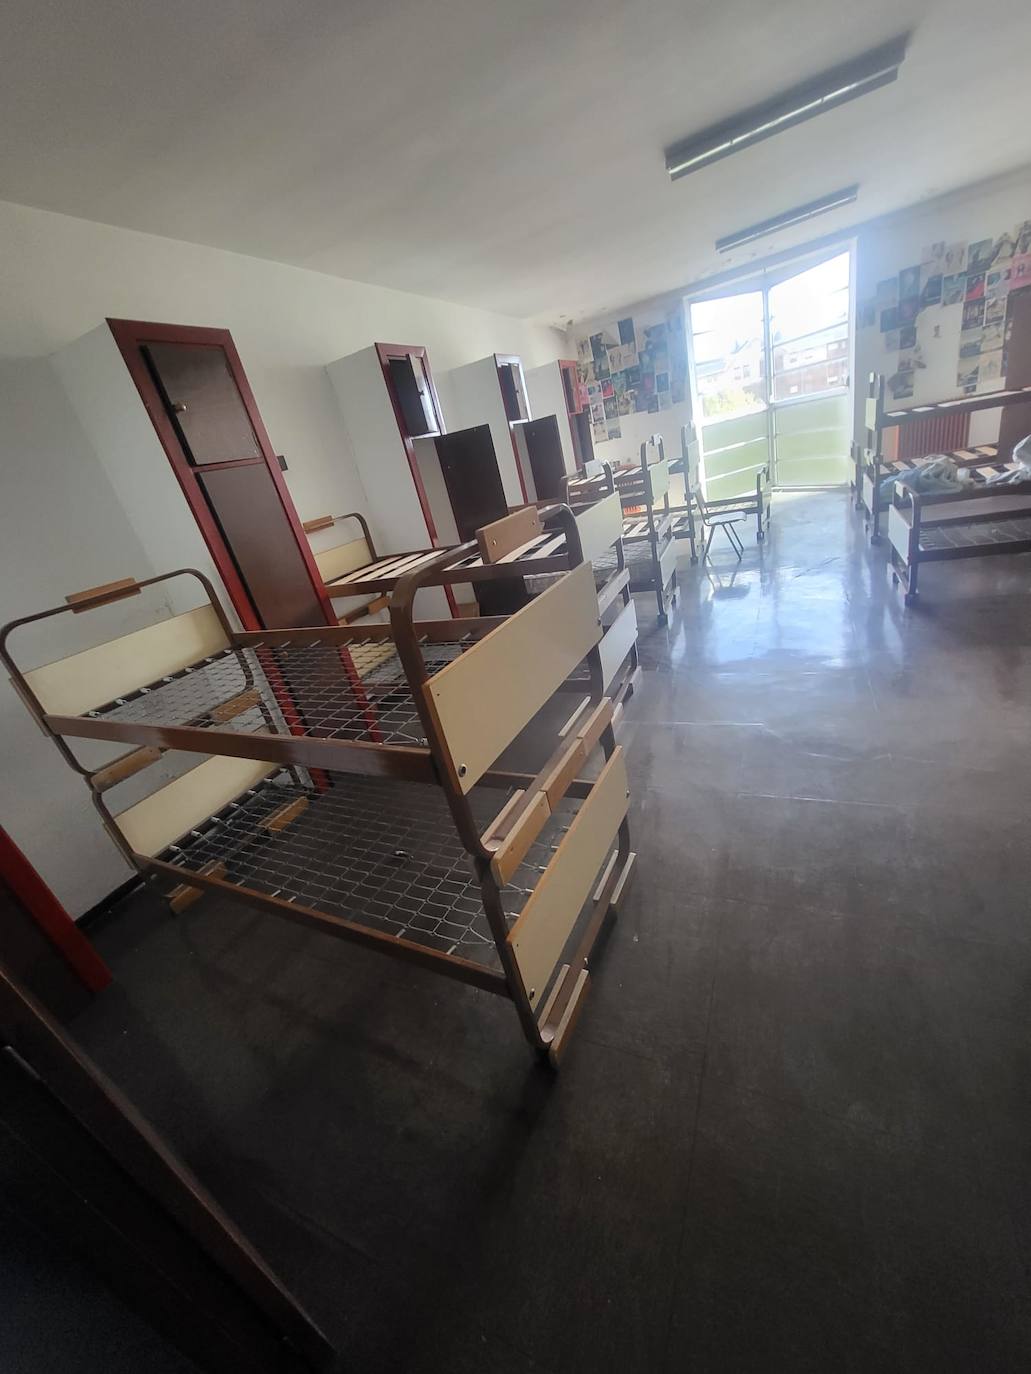 Corazones Unidos reclama a la ULE la cesión del mobiliario y enseres de la Escuela Hogar de Ponferrada